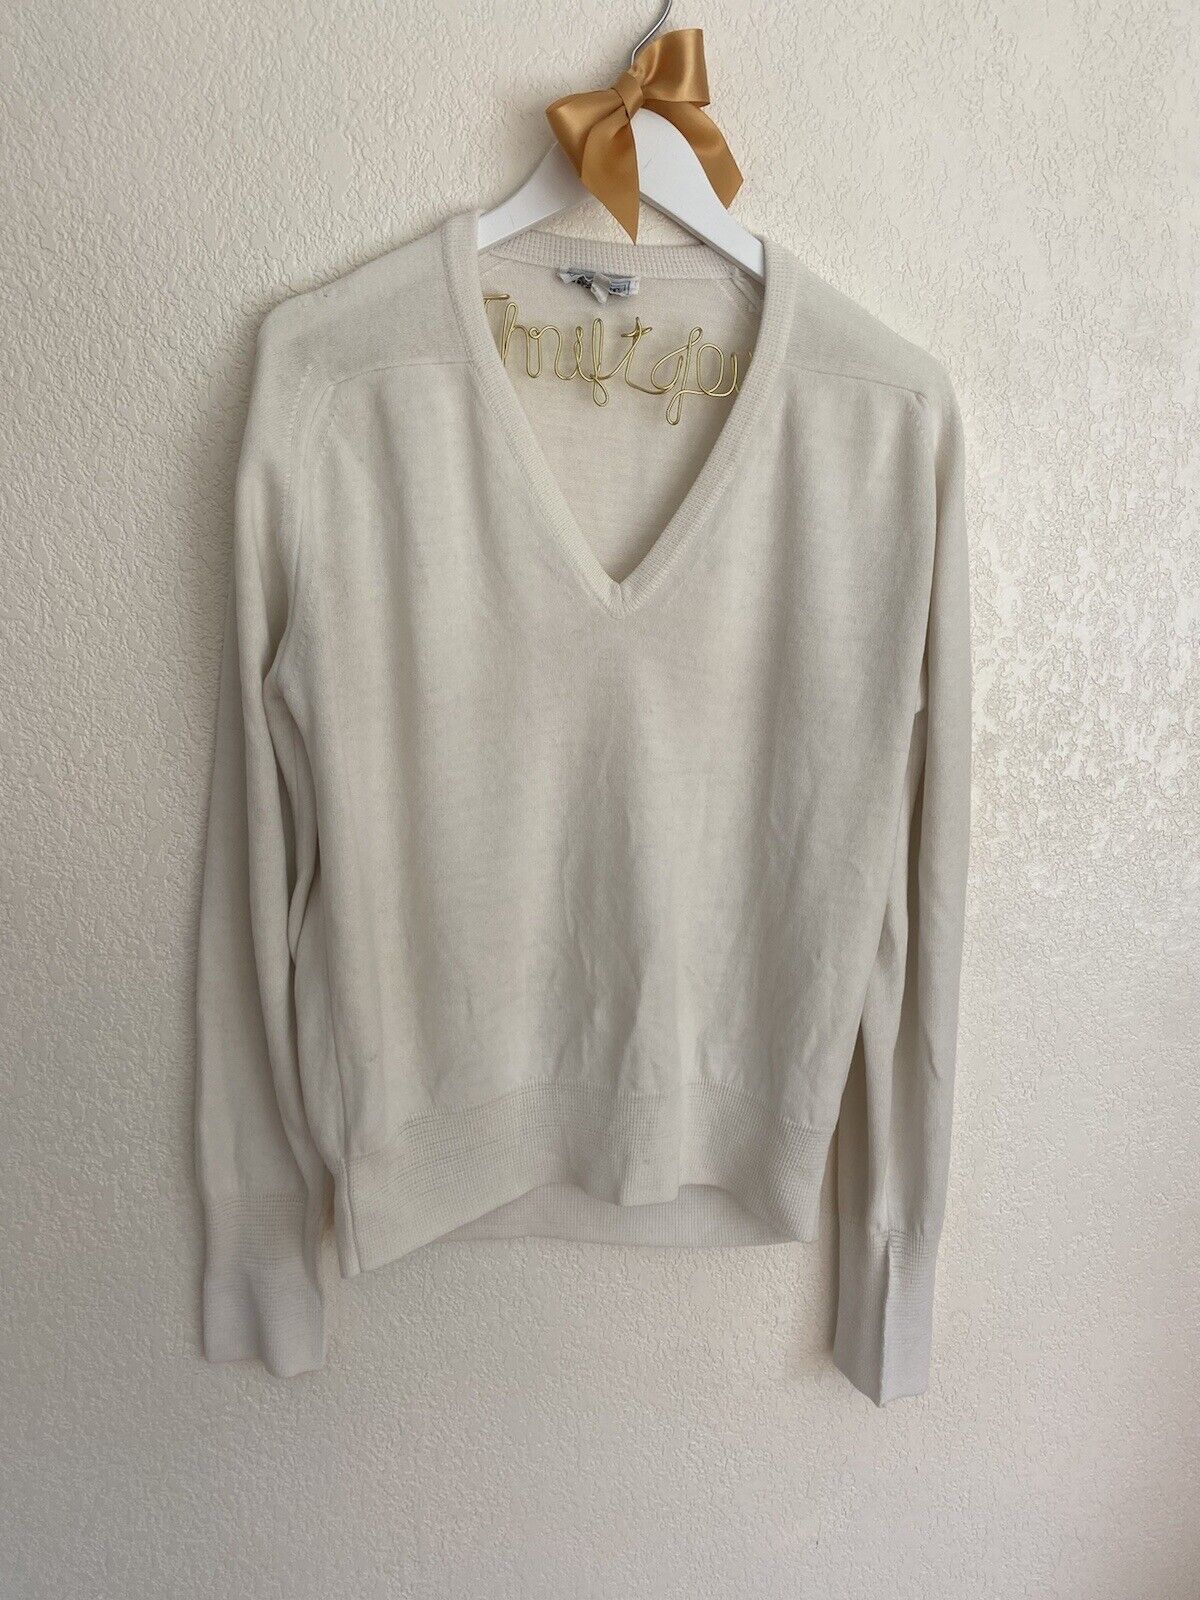 White V-Neck Sweater - Duvet - Men’s Small